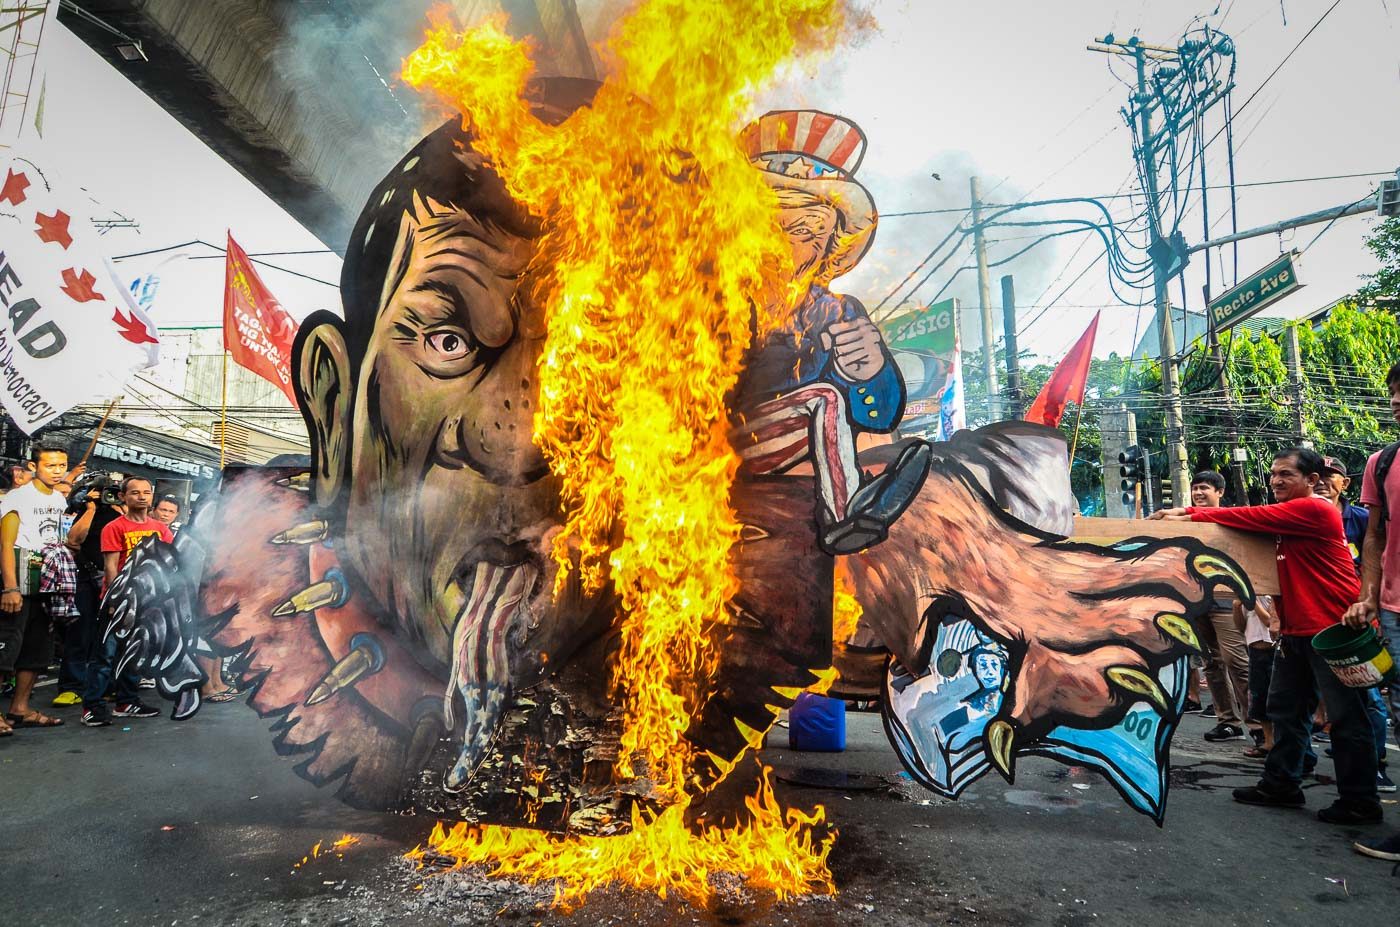 PATUNG.  Pengunjuk rasa anti-Duterte membakar patung Presiden Rodrigo Duterte yang digambarkan sebagai anjing peliharaan Presiden AS Donald Trump yang berwajah ular.  Foto oleh Maria Tan/Rappler  